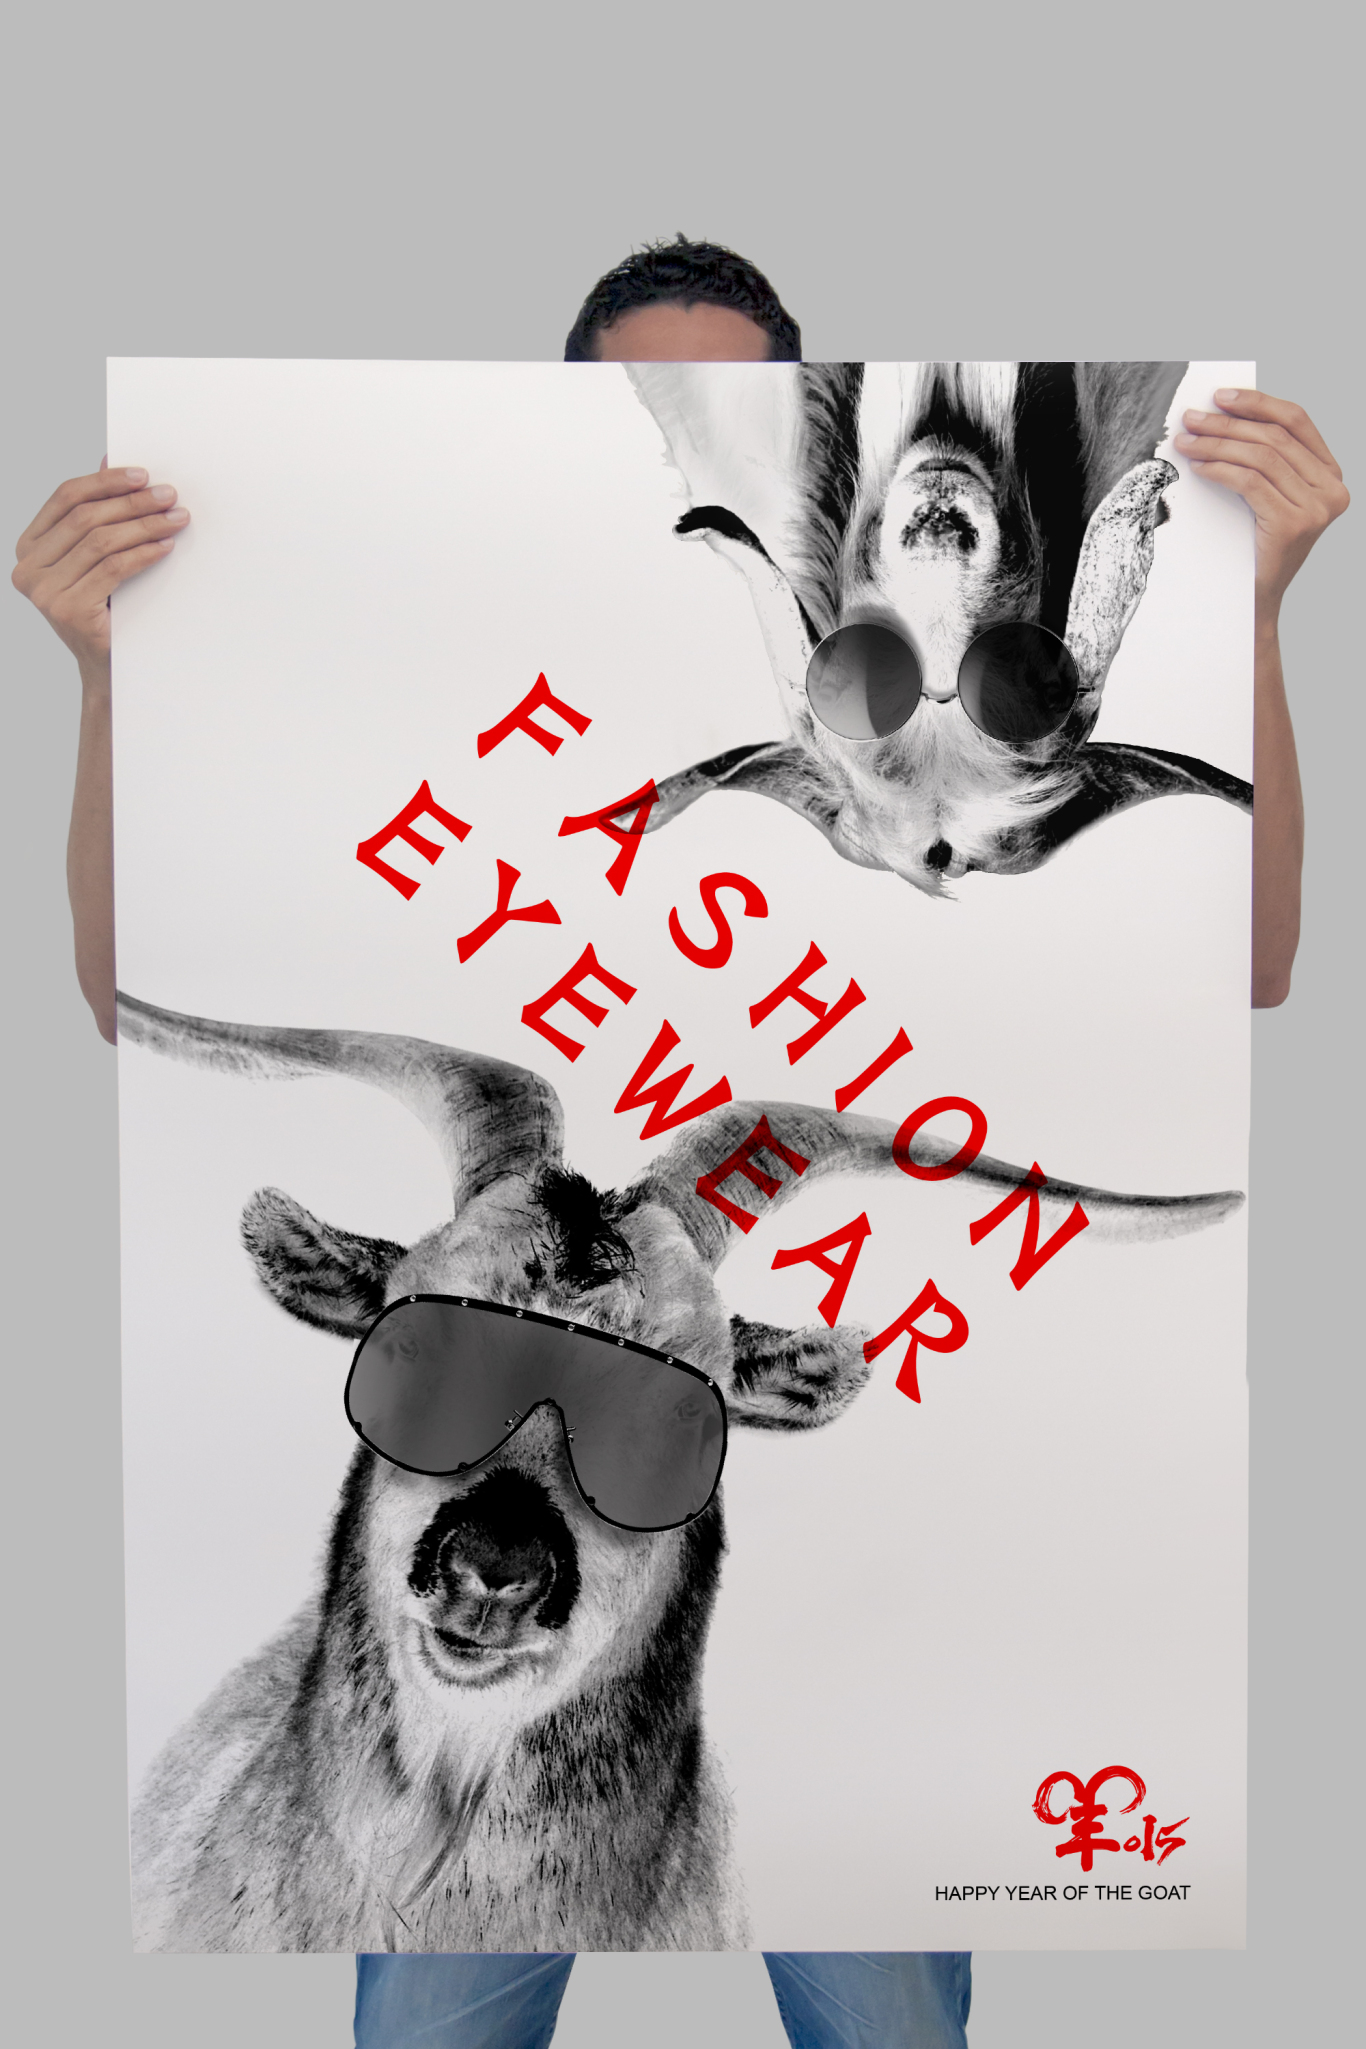 羊年快乐 时尚眼镜海报设计图3